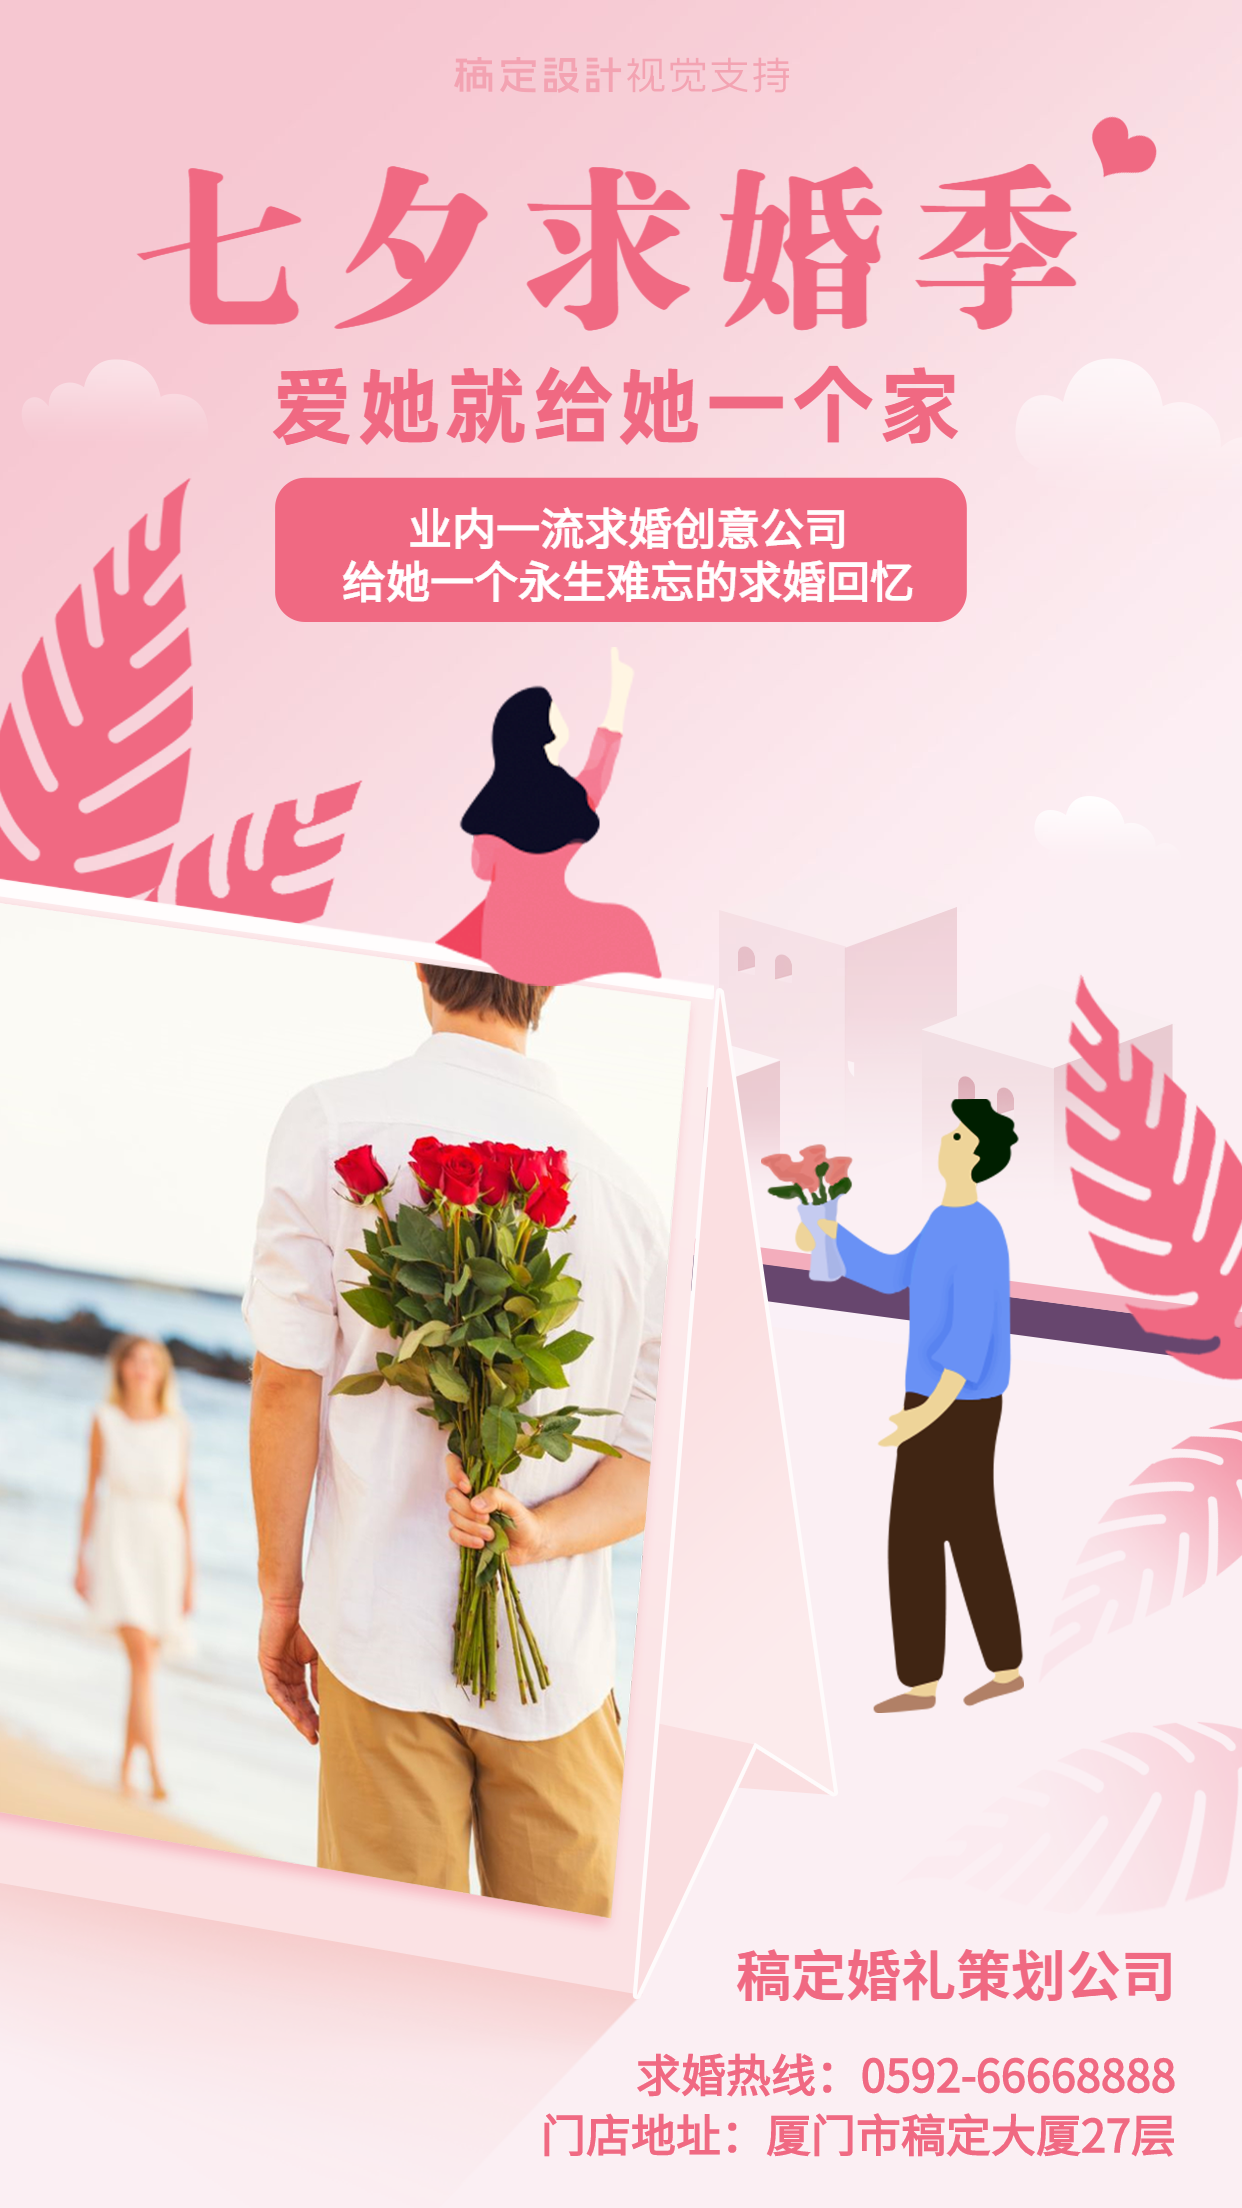 婚庆七夕求婚策划宣传海报